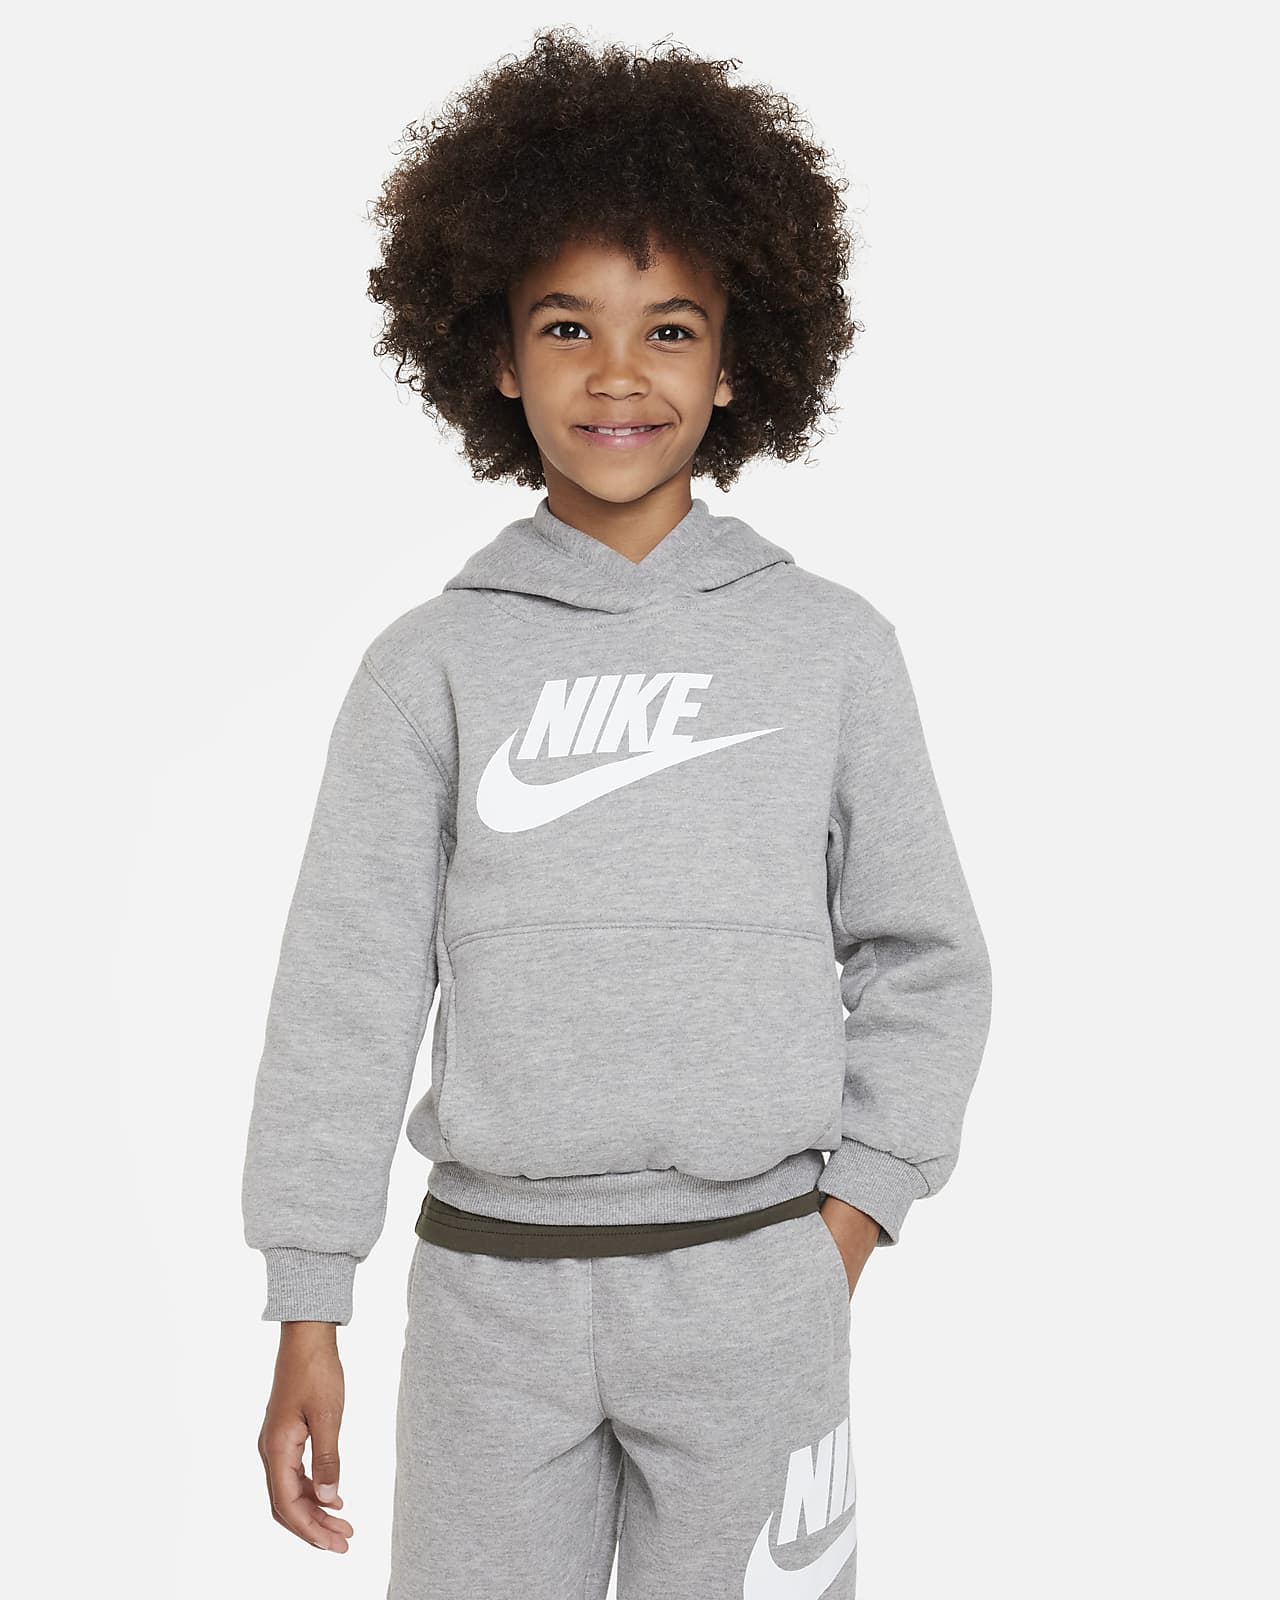 Club Hoodie. Sportswear Fleece Pullover Kids Little Nike